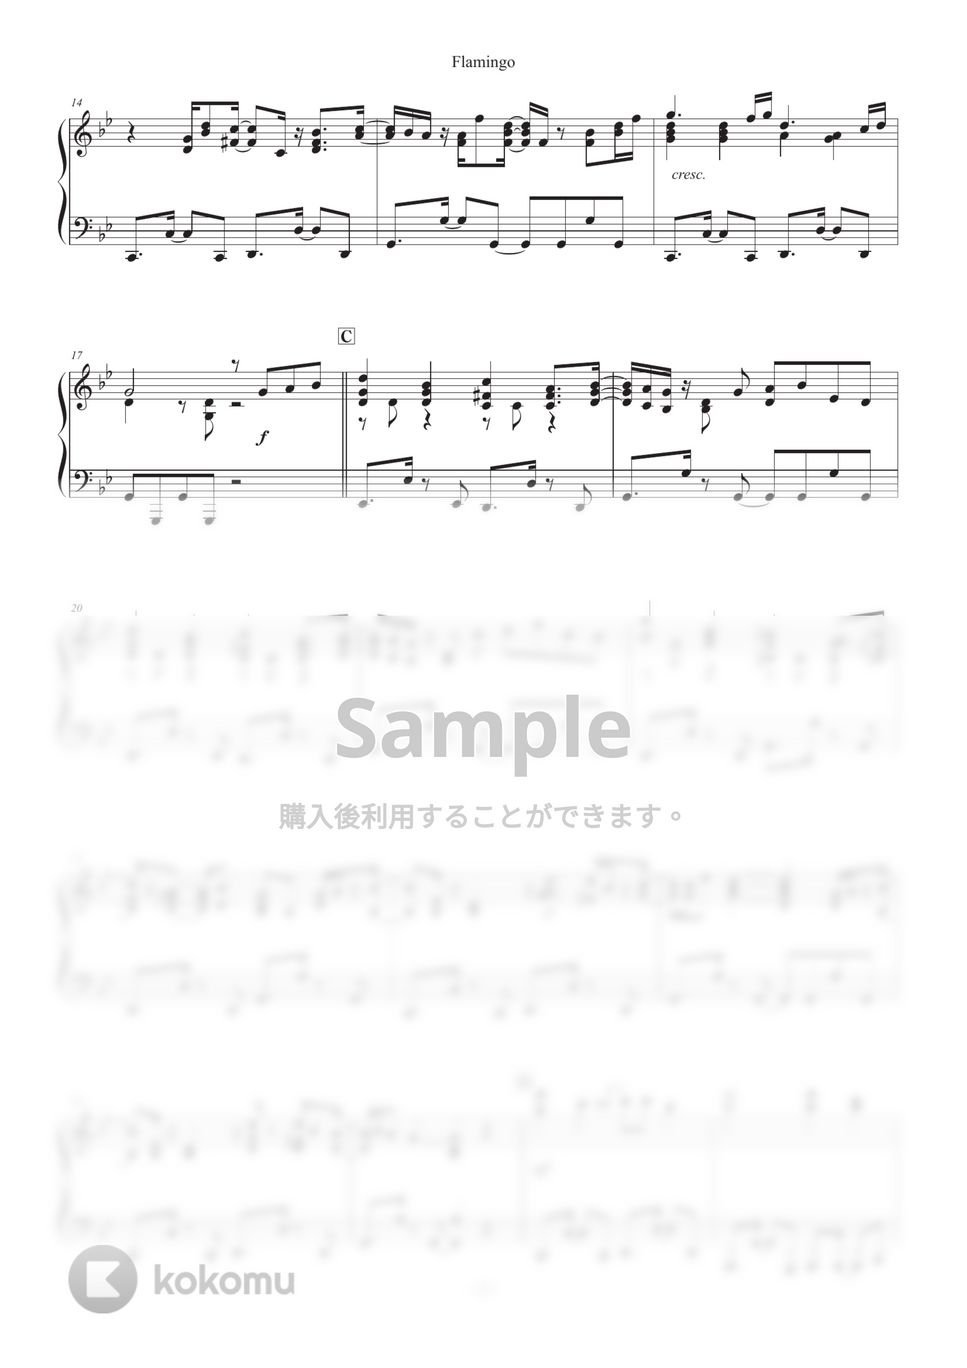 米津玄師 - Flamingo (上級ピアノ) by 朝香智子